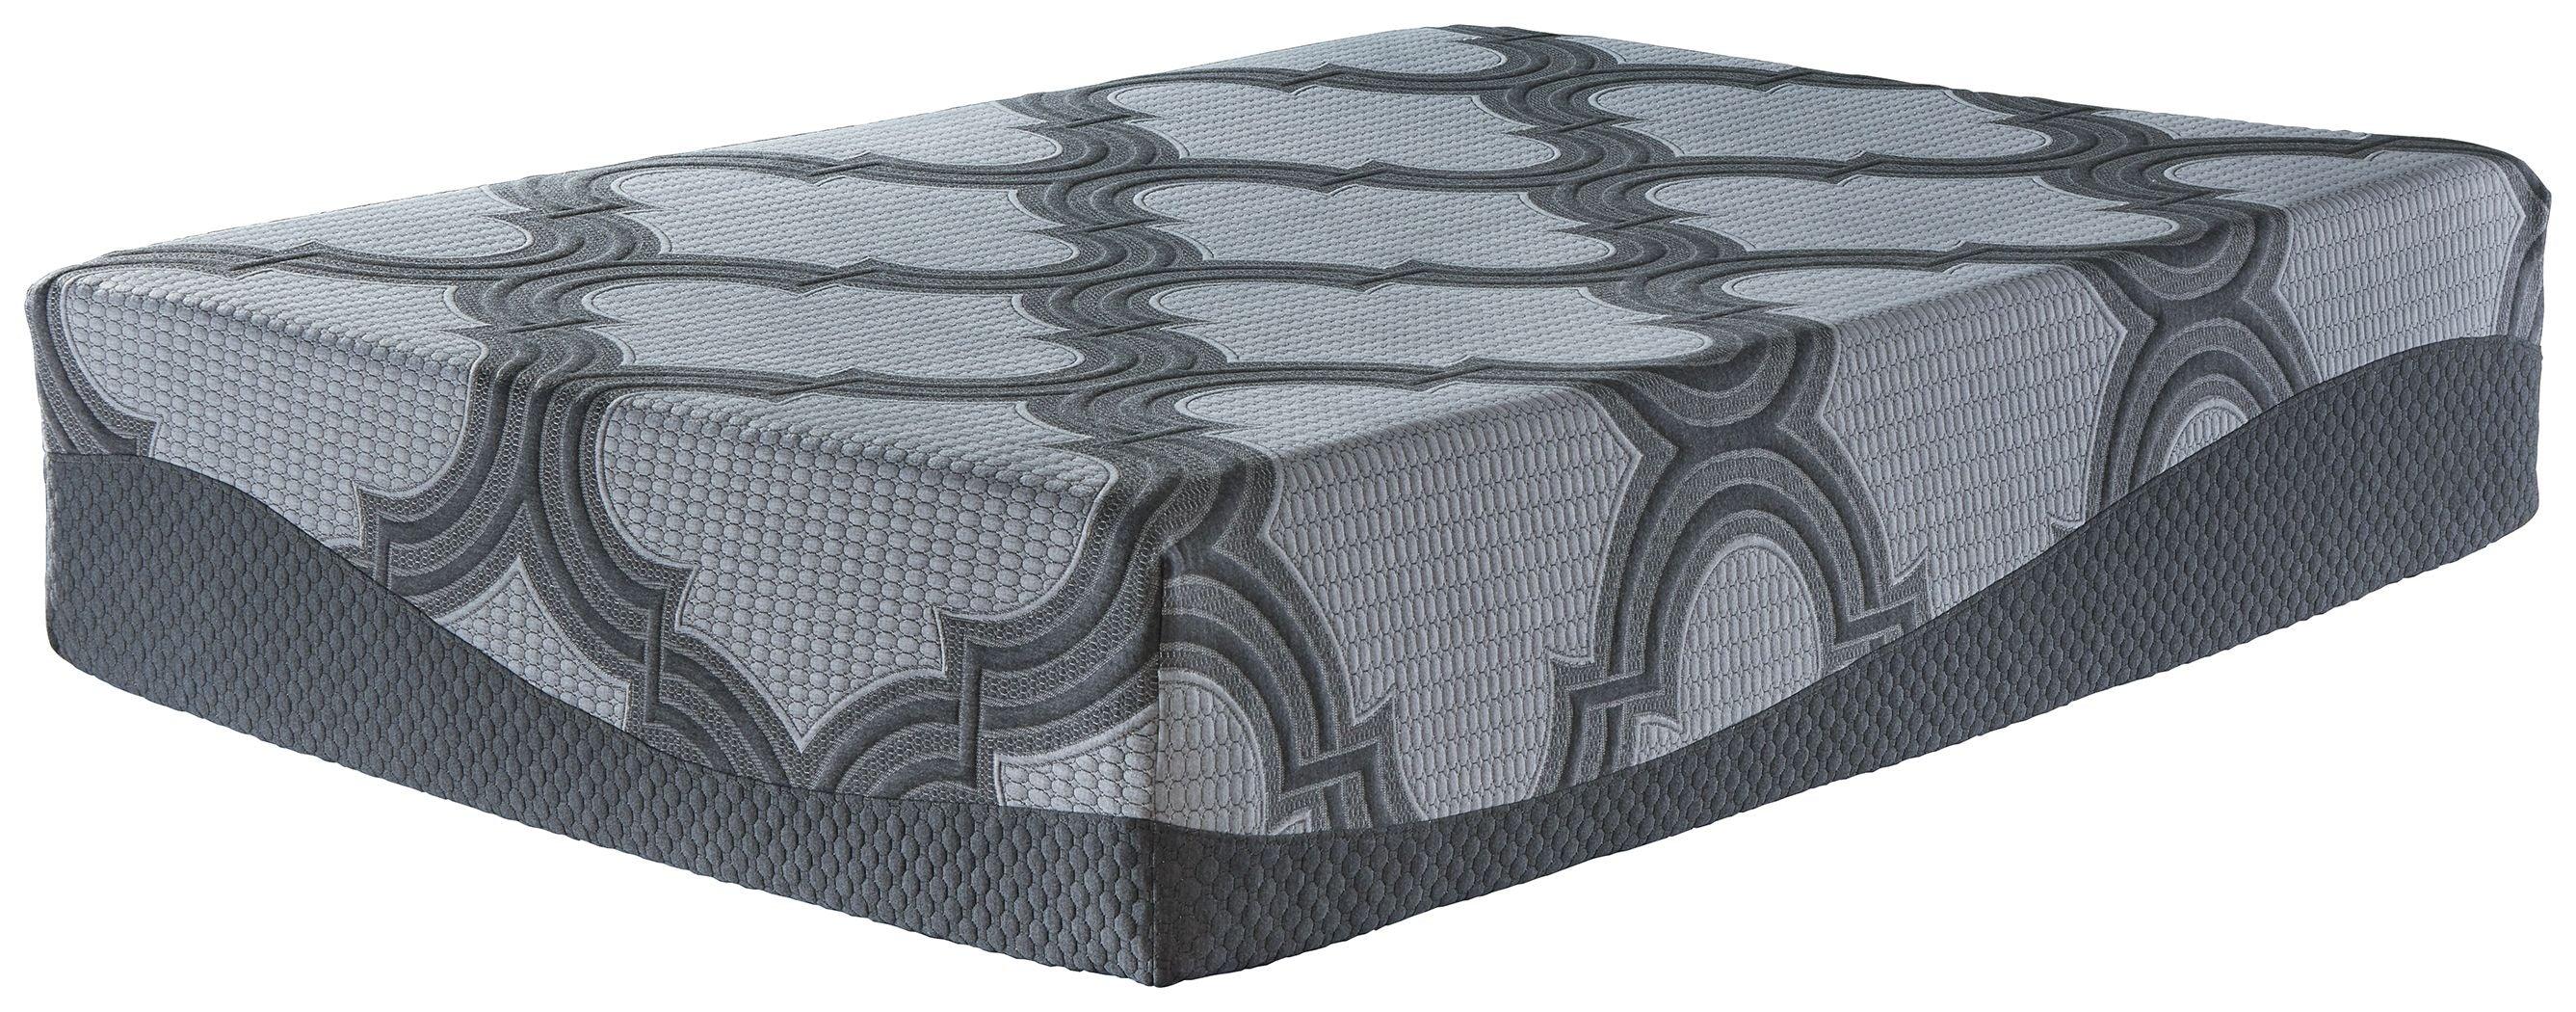 Ashley Sleep® - Ashley Sleep 1400 Hybrid Mattress - 5th Avenue Furniture